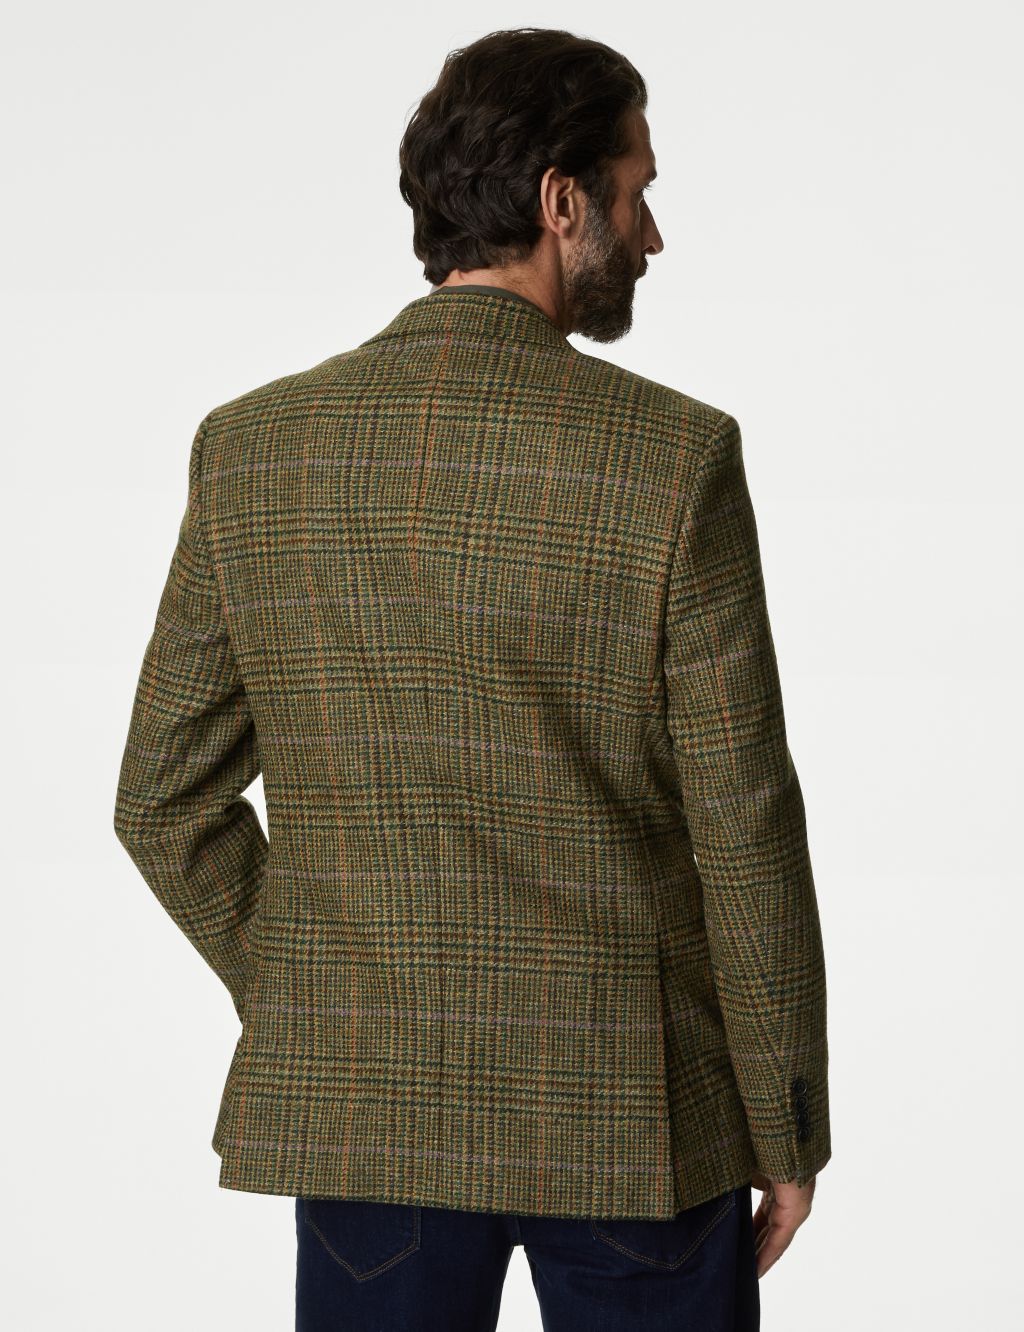 British Pure Wool Check Blazer image 5